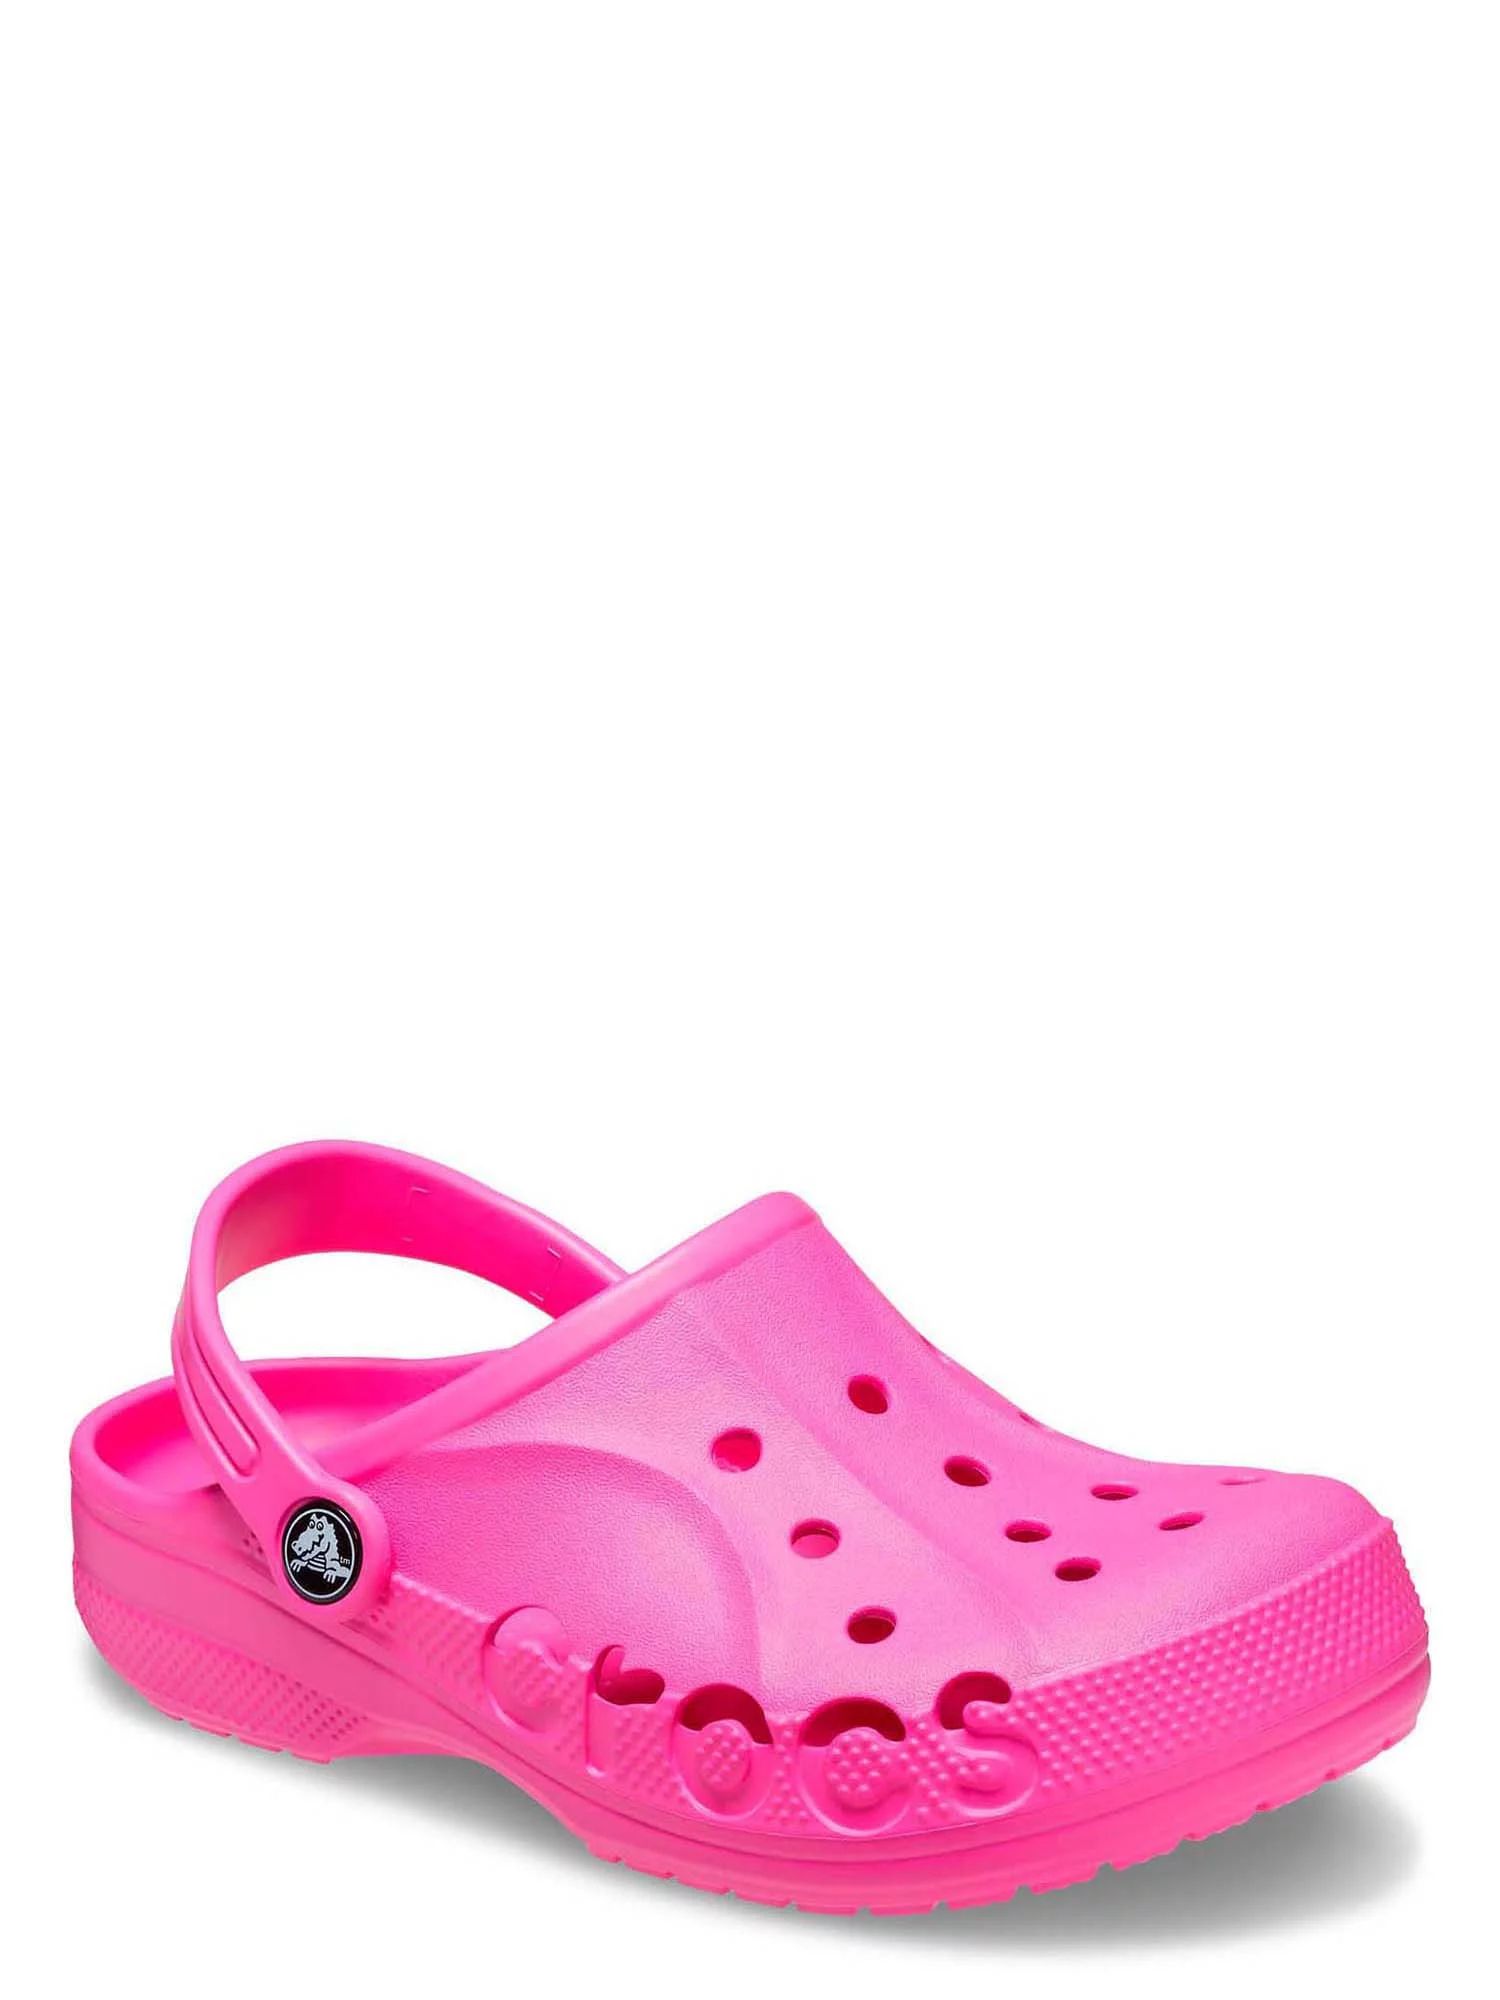 Crocs Toddler & Kids Baya Clog | Walmart (US)